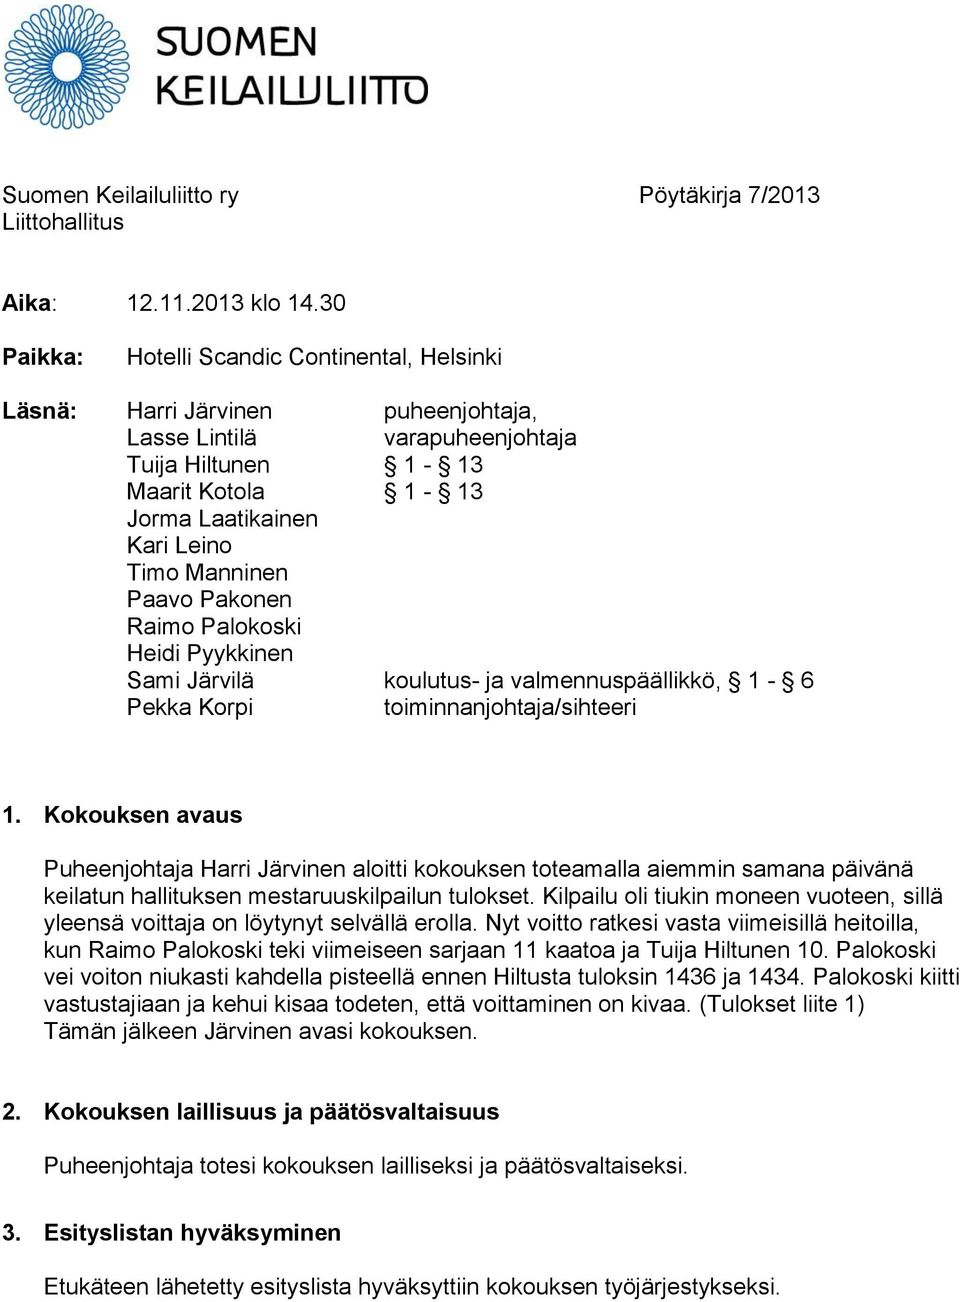 Paavo Pakonen Raimo Palokoski Heidi Pyykkinen Sami Järvilä koulutus- ja valmennuspäällikkö, 1-6 Pekka Korpi toiminnanjohtaja/sihteeri 1.